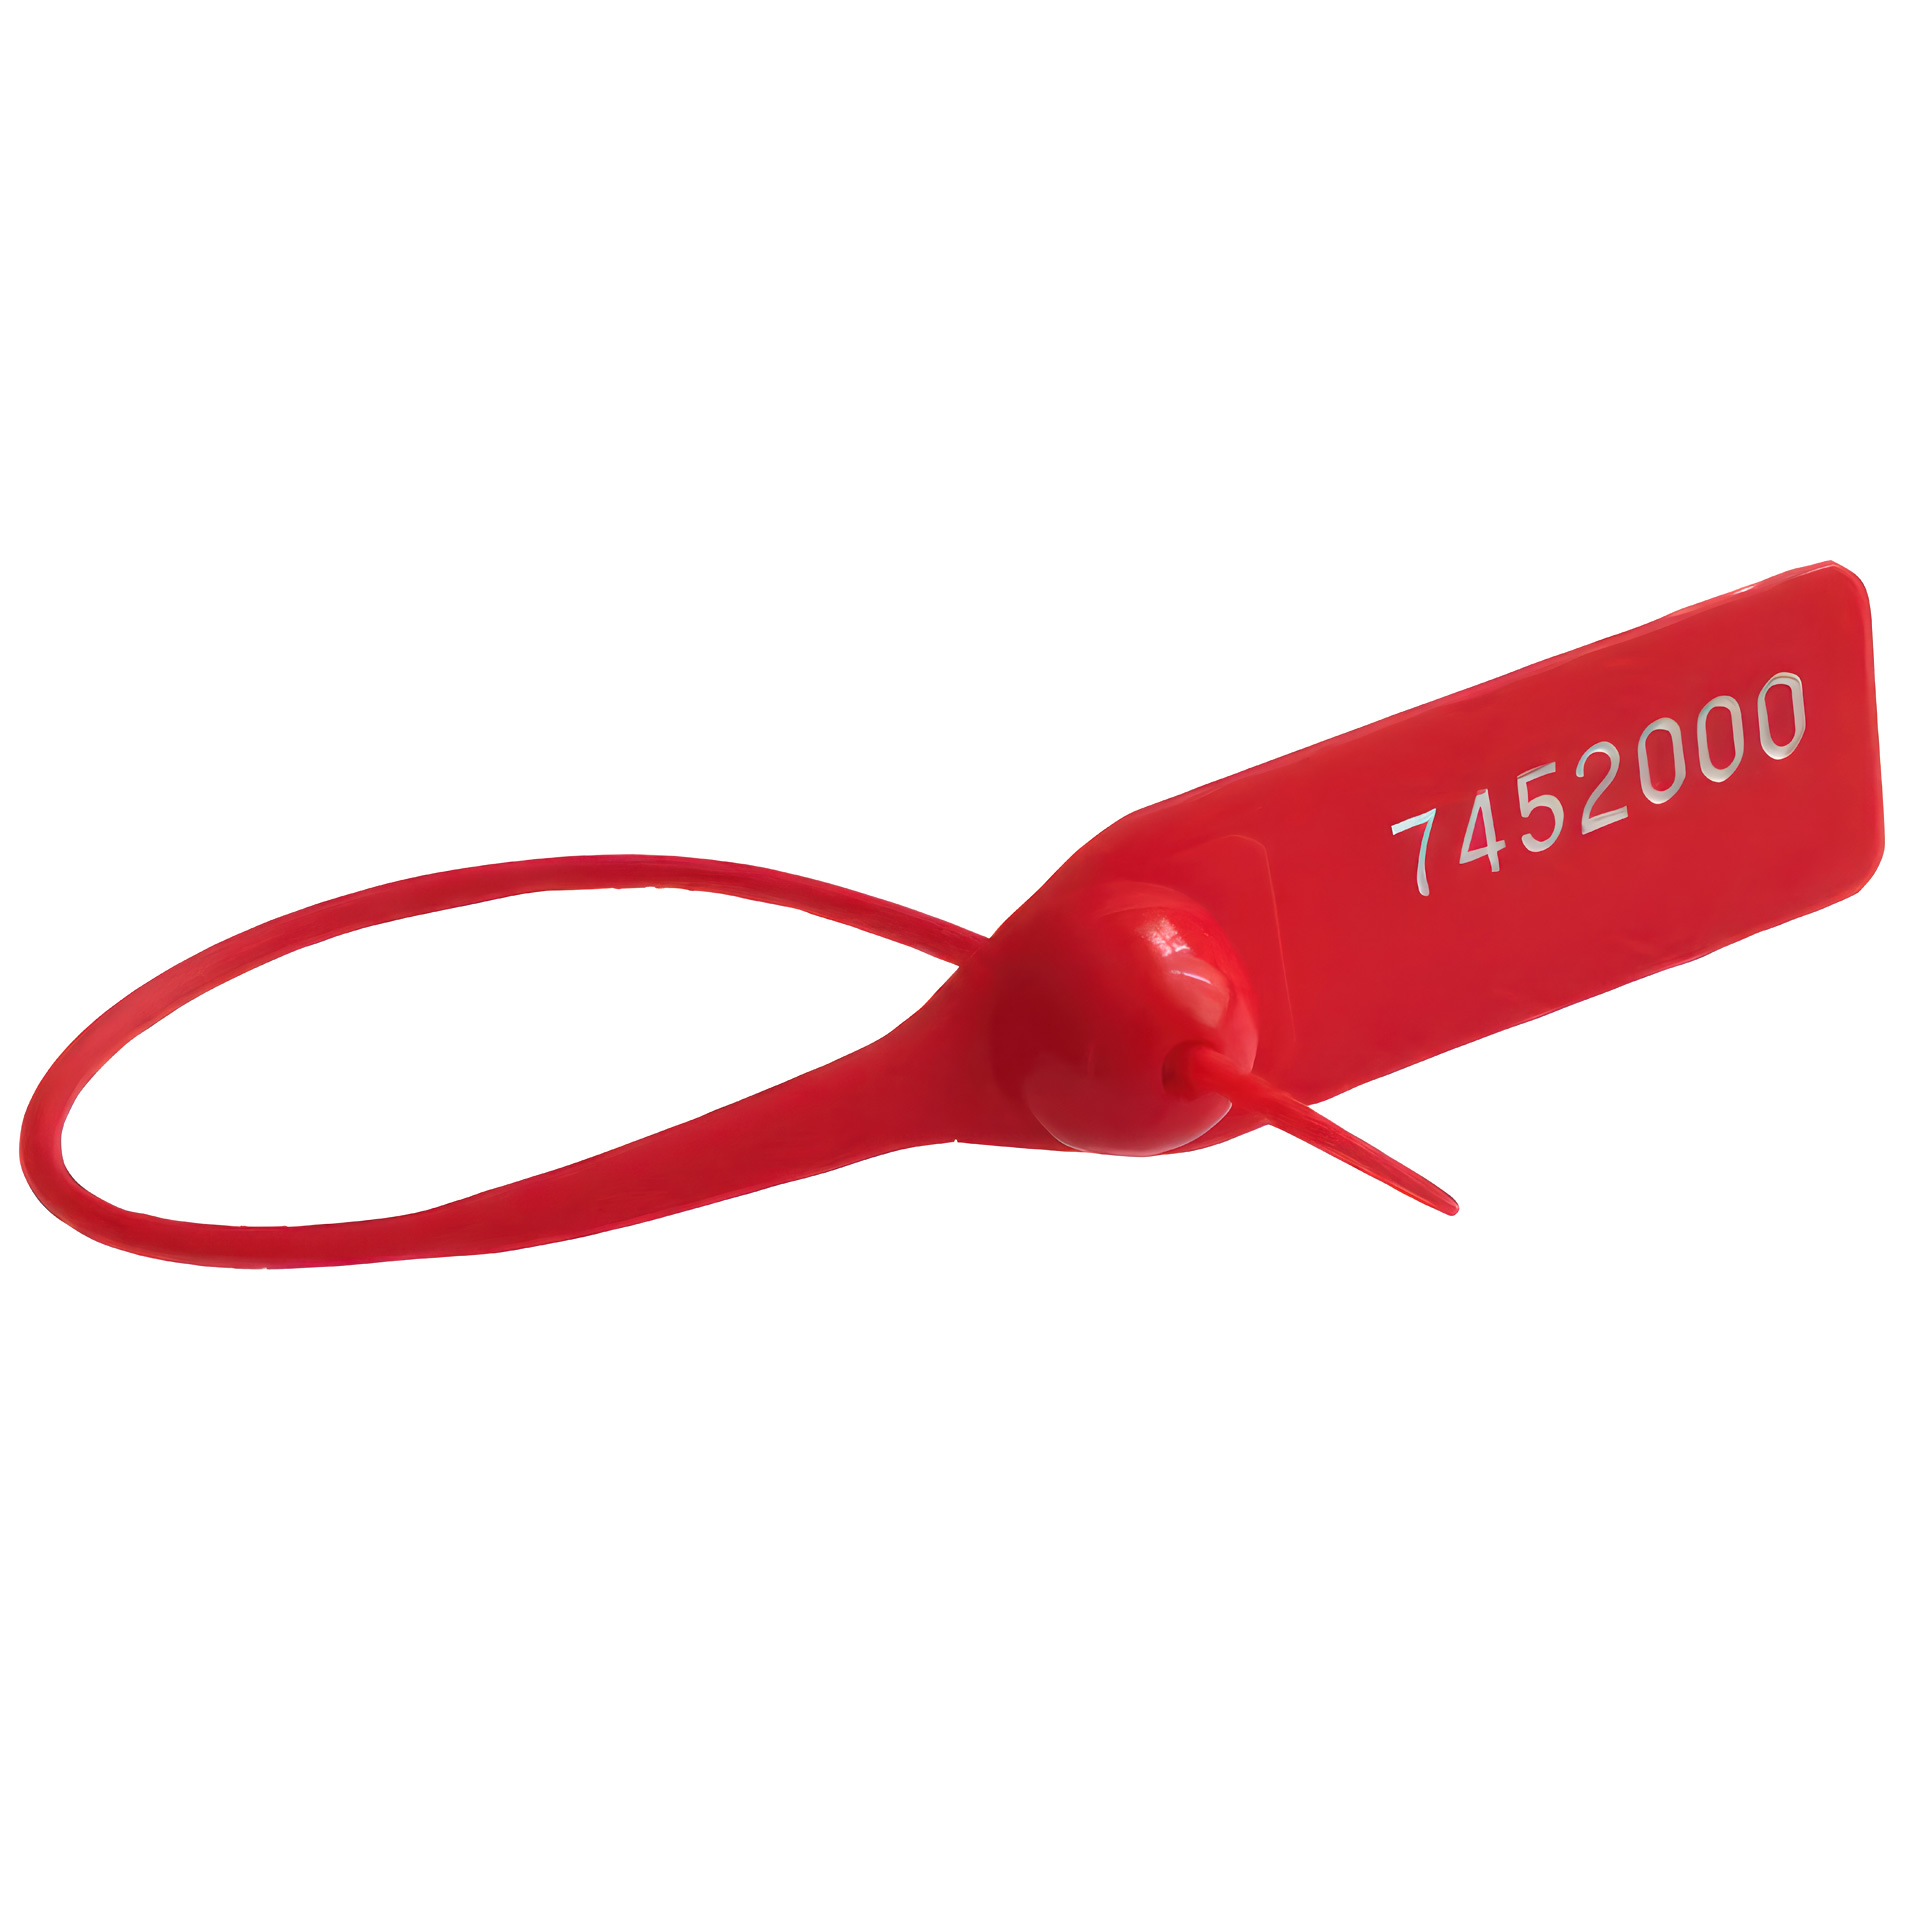 Пломба номерная пластиковая ОСА-150 красный оптом в наличии, на заказ